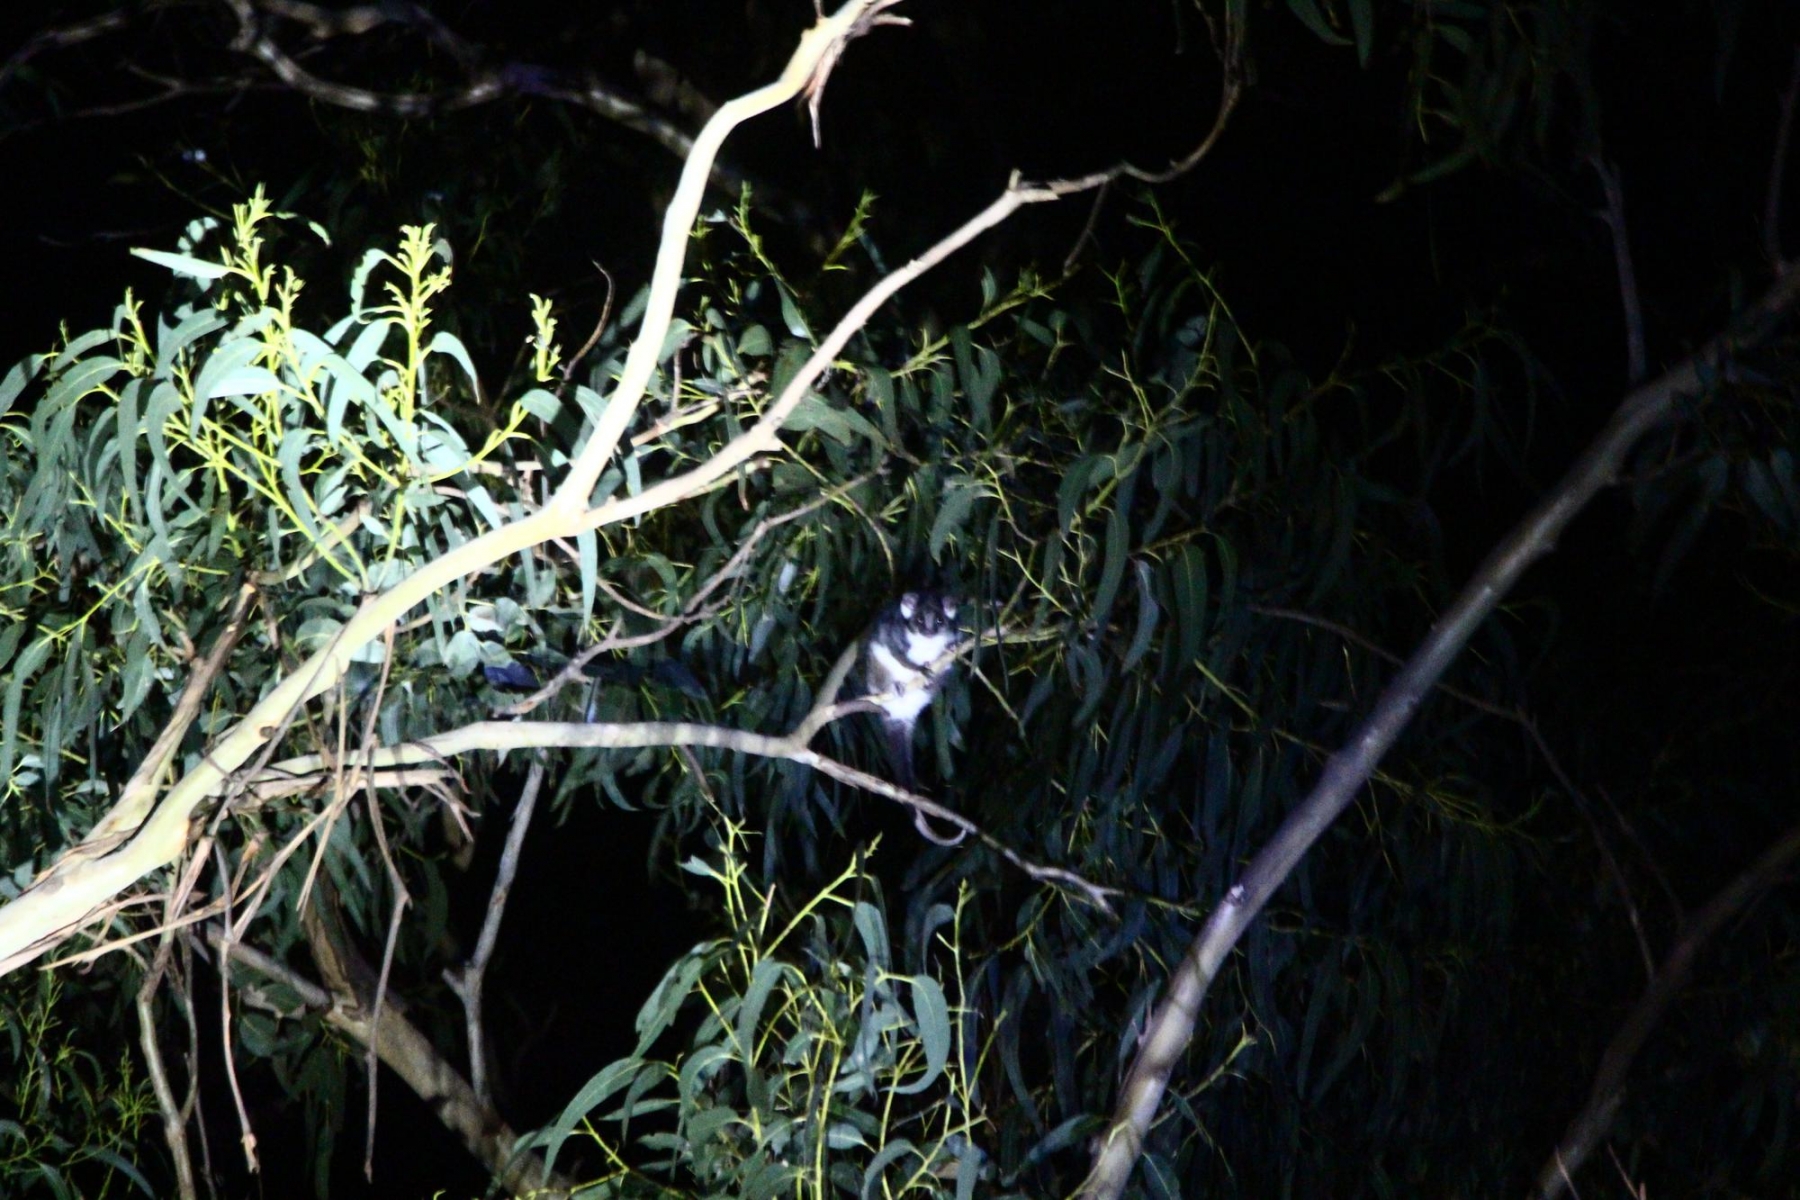 Ringtailed possum shot in the dark.